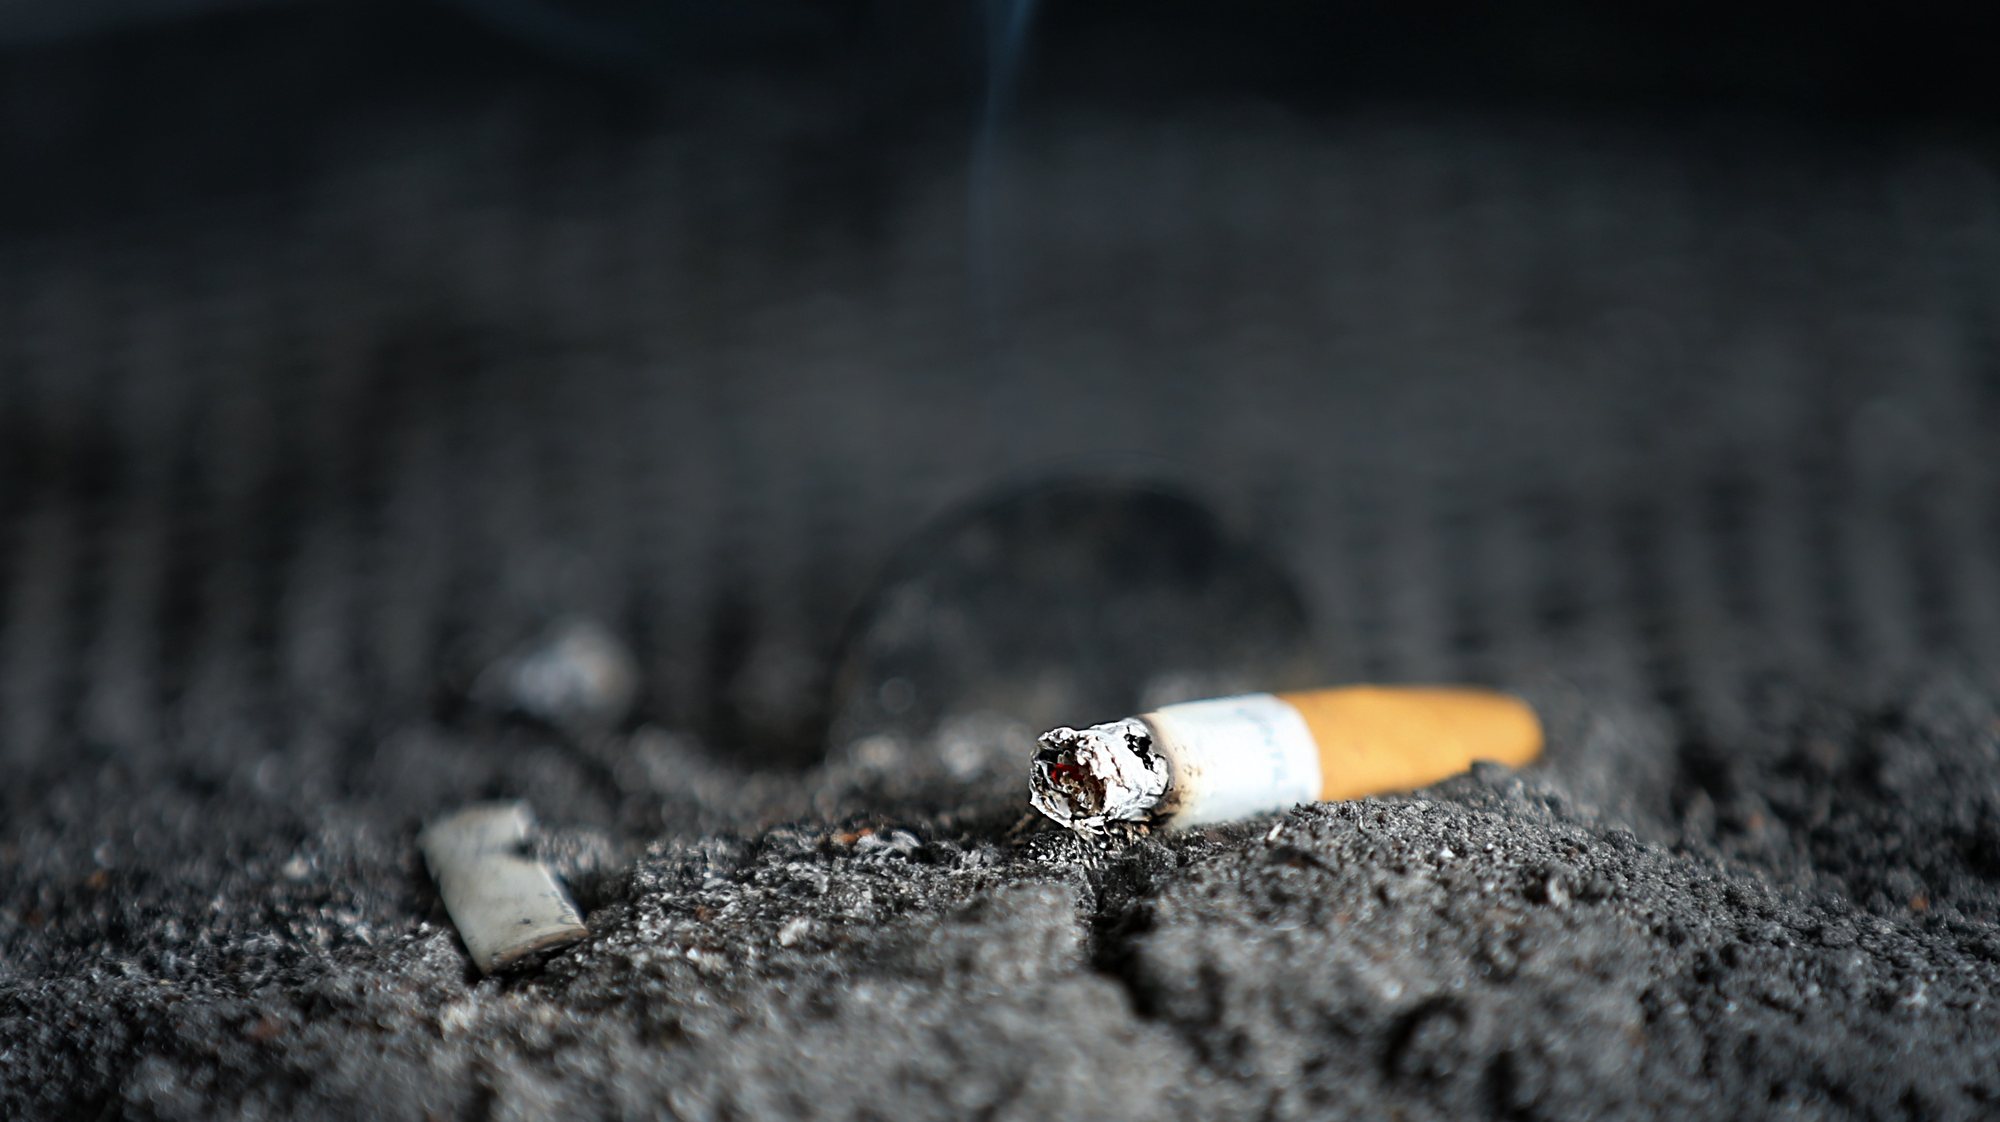 Cinzeiro público com um cigarro, 15 outubro 2019.  MANUEL DE ALMEIDA/LUSA